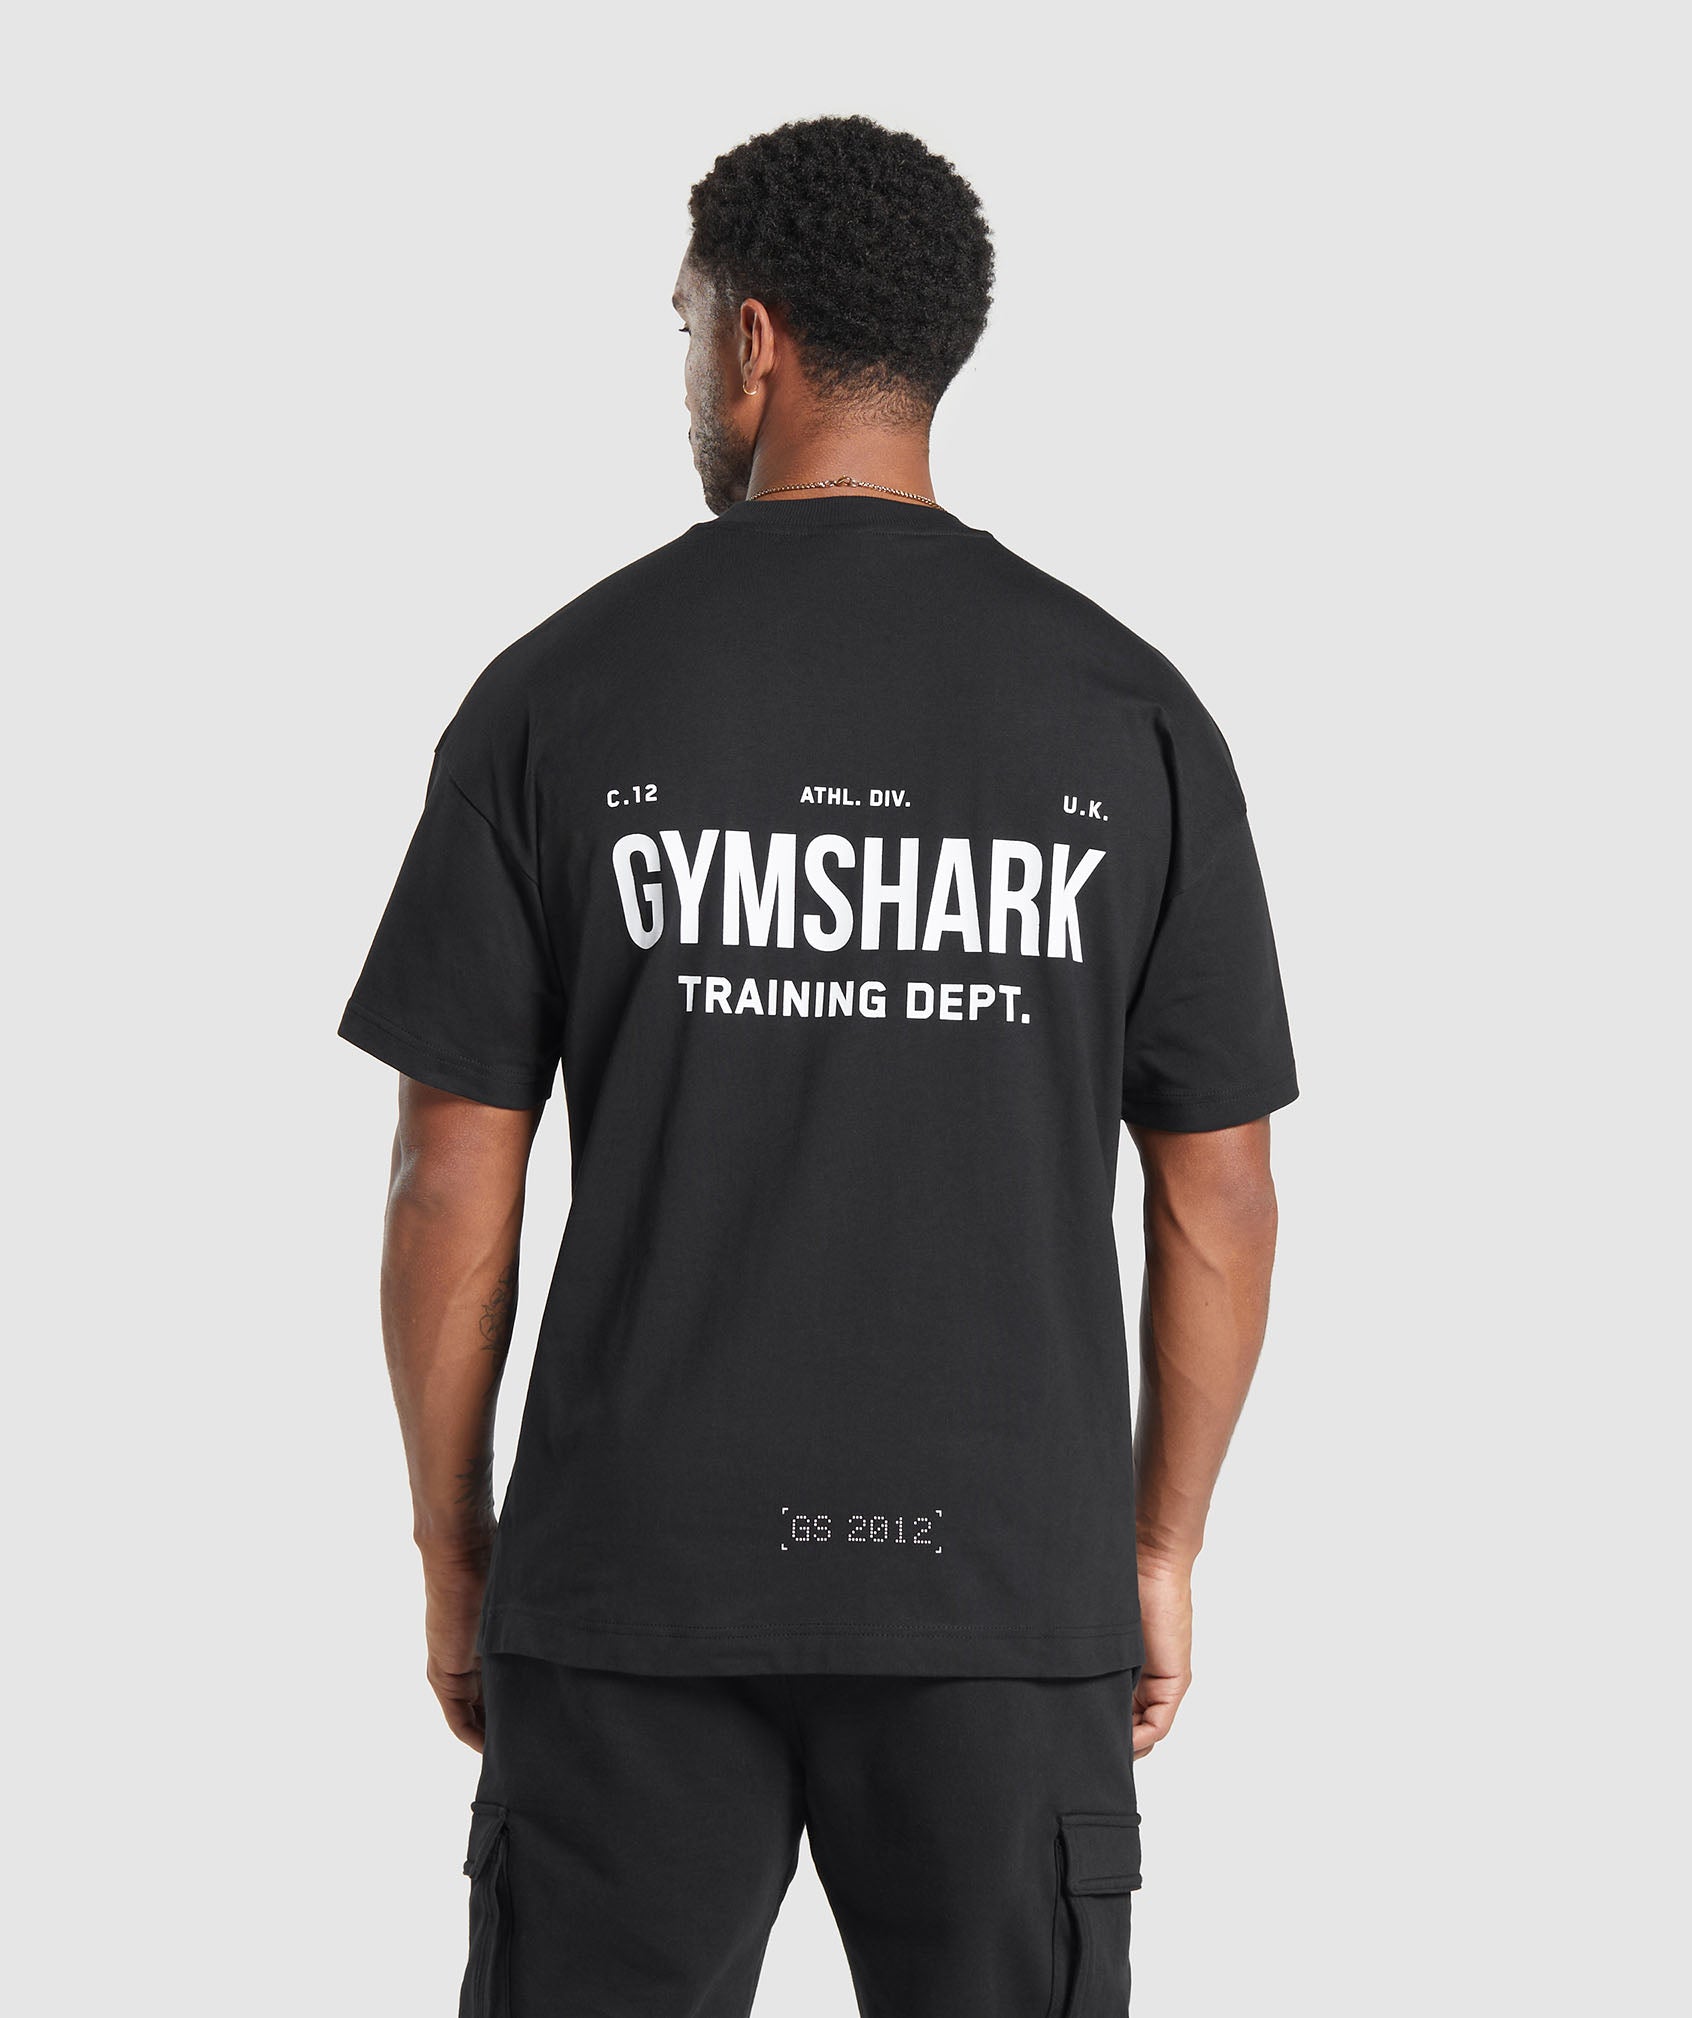 Gymshark Training Dept. T-Shirt - Black